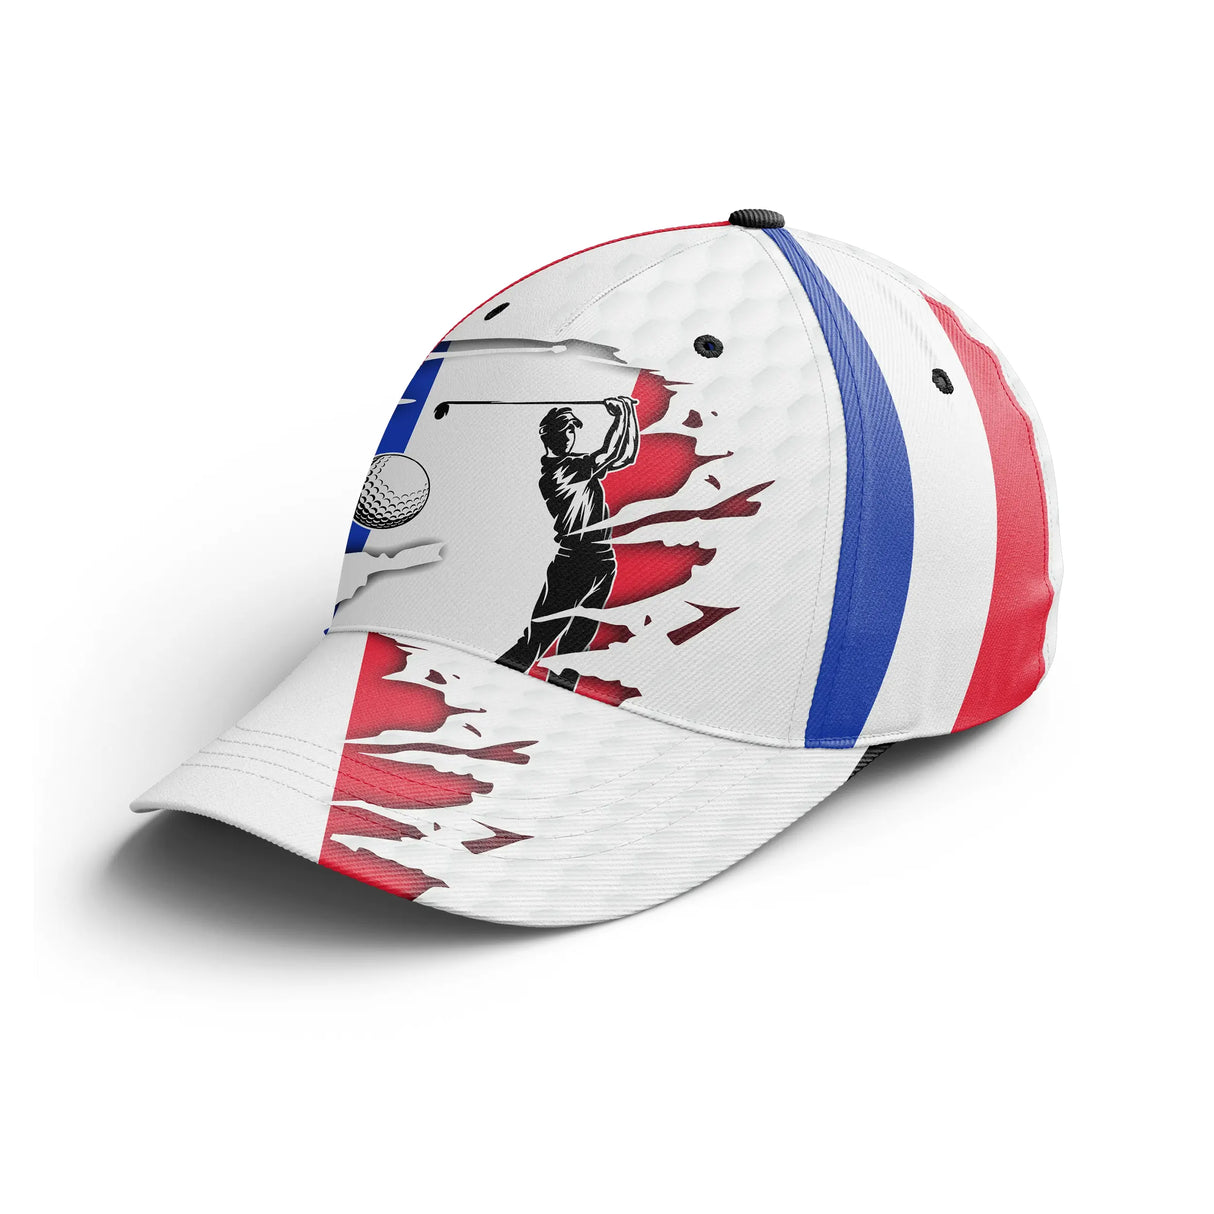 Chiptshirts - Gorra de golf Performance, diseños de pelotas de golf, bandera de Francia, regalo ideal para fanáticos del golf - CTS26052237